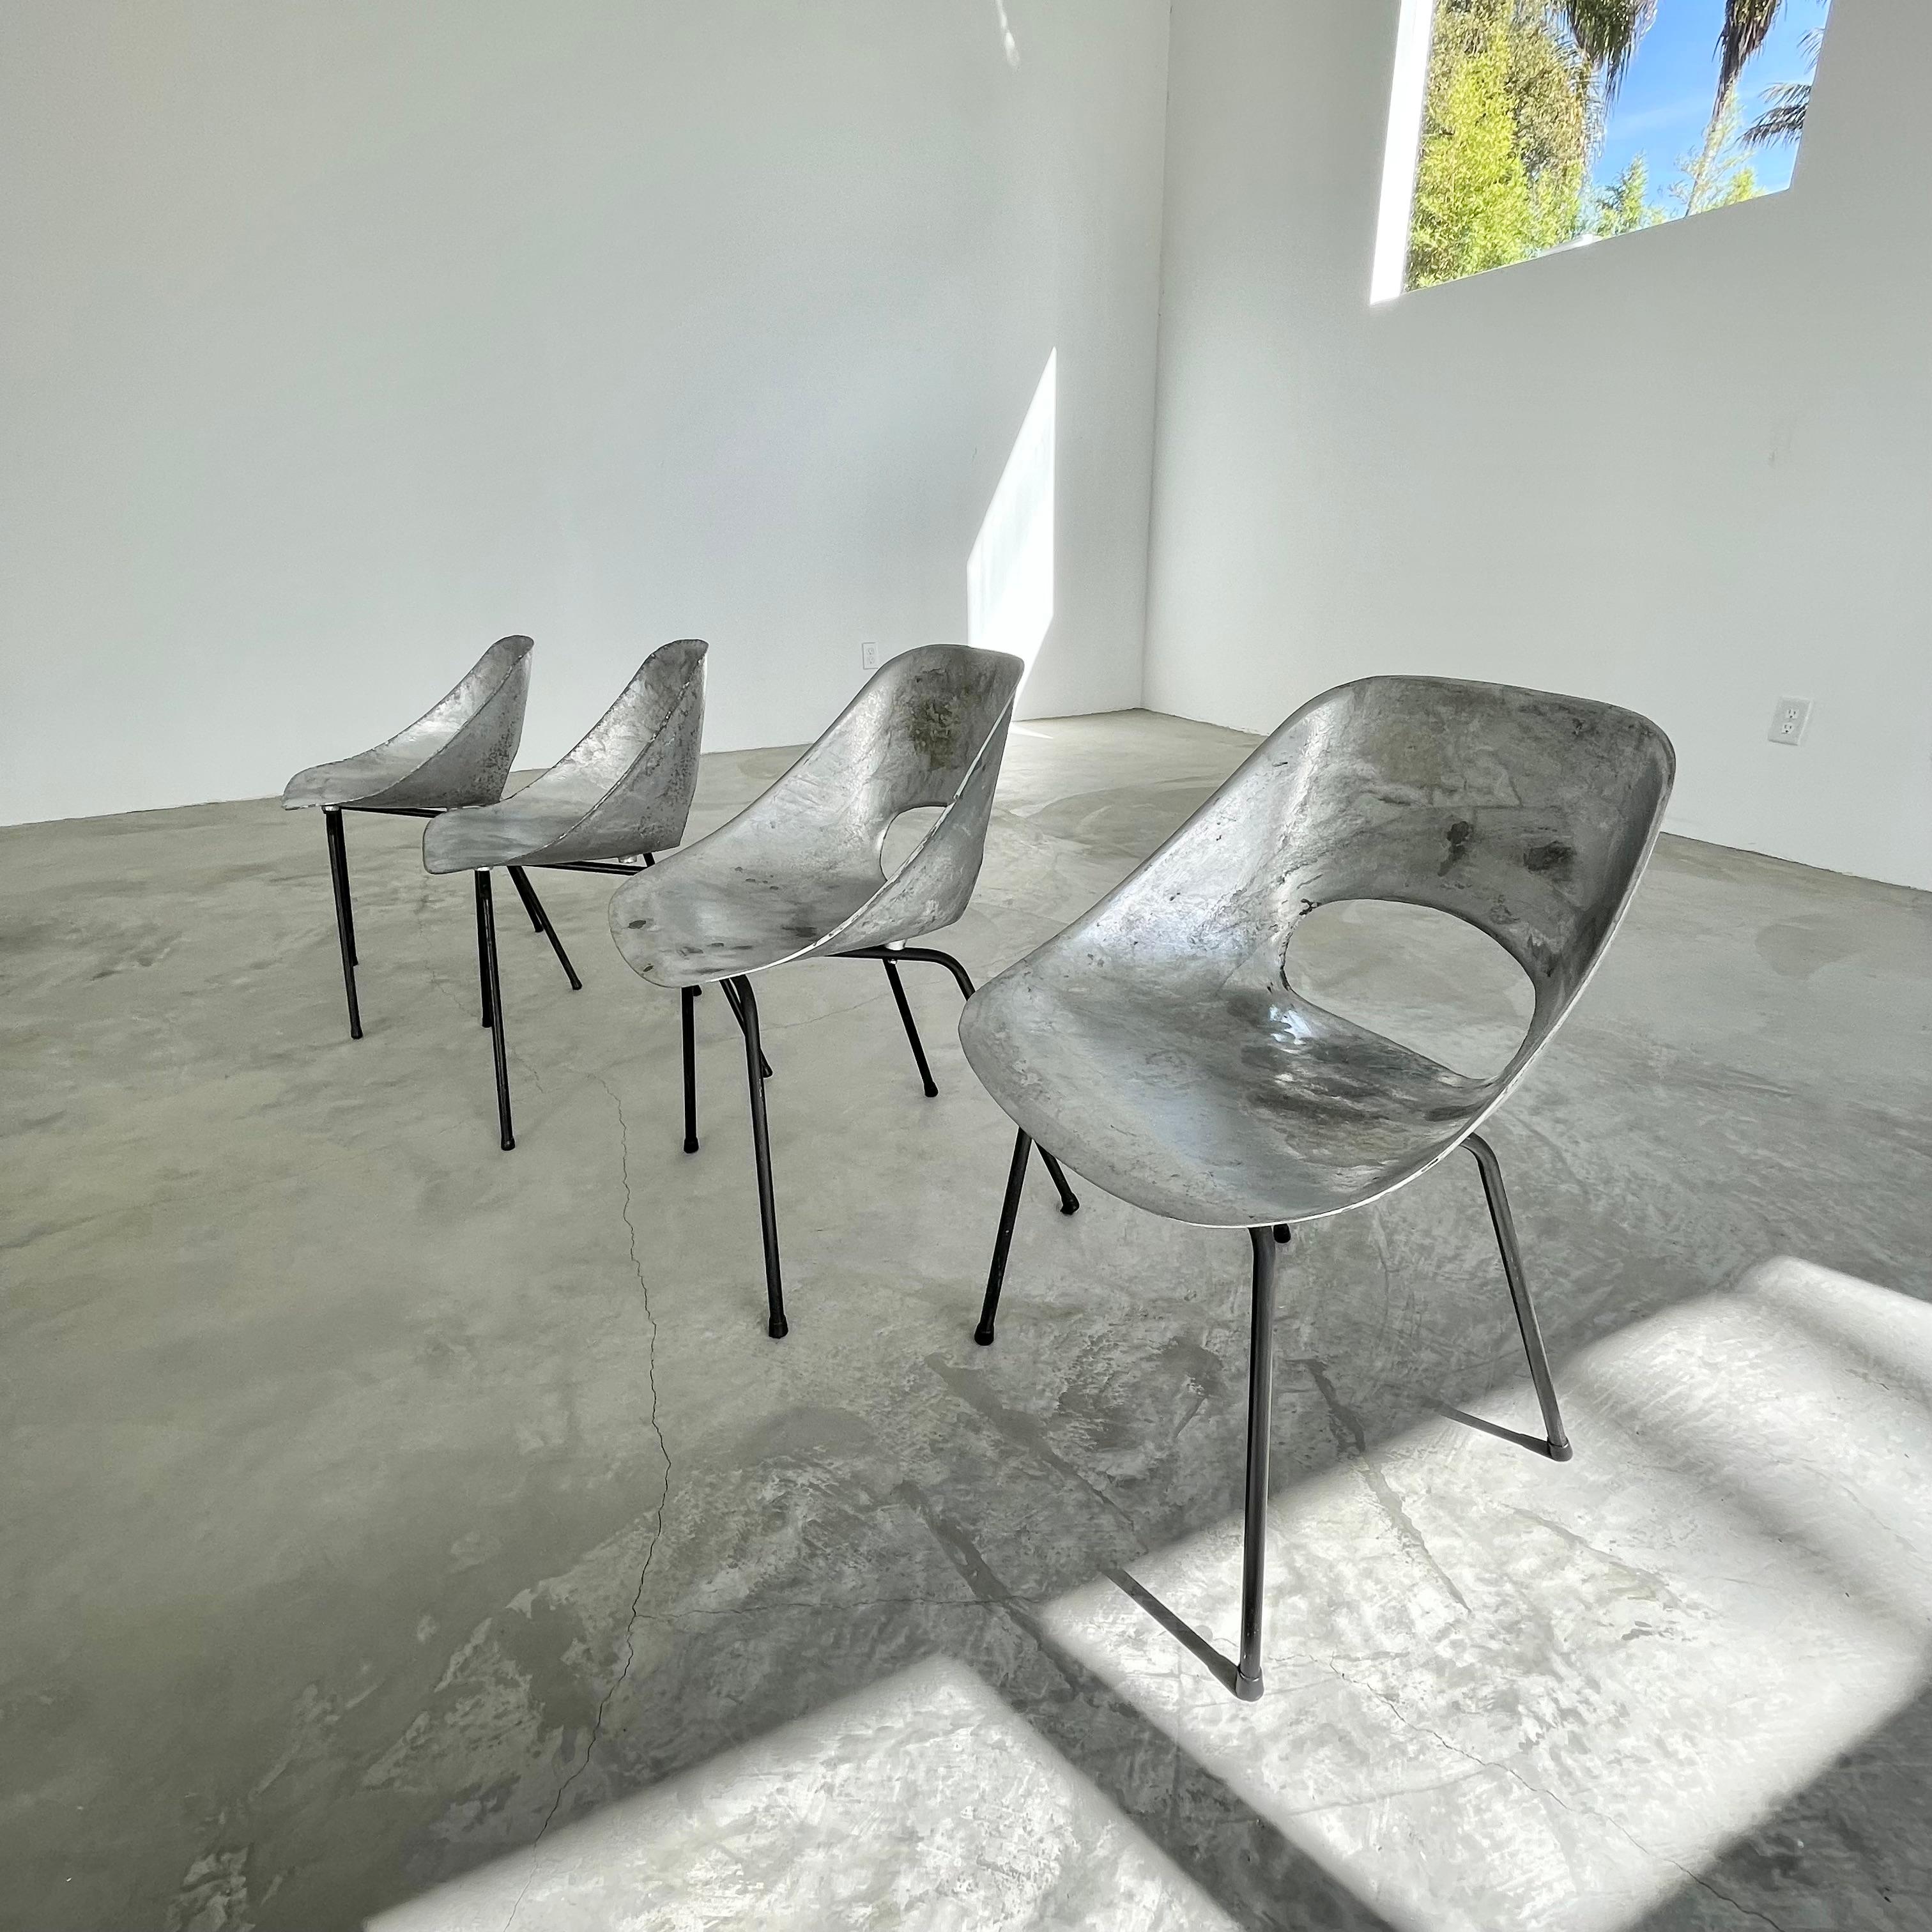 Wunderschönes Set aus 4 Aluminiumstühlen von Pierre Guariche. Der Rahmen aus Aluminiumguss steht auf vier Eisenbeinen. Toller Vintage-Zustand und schön minimalistisches Design. Äußerst selten. Die unkonventionelle Schönheit dieser Stühle macht sie